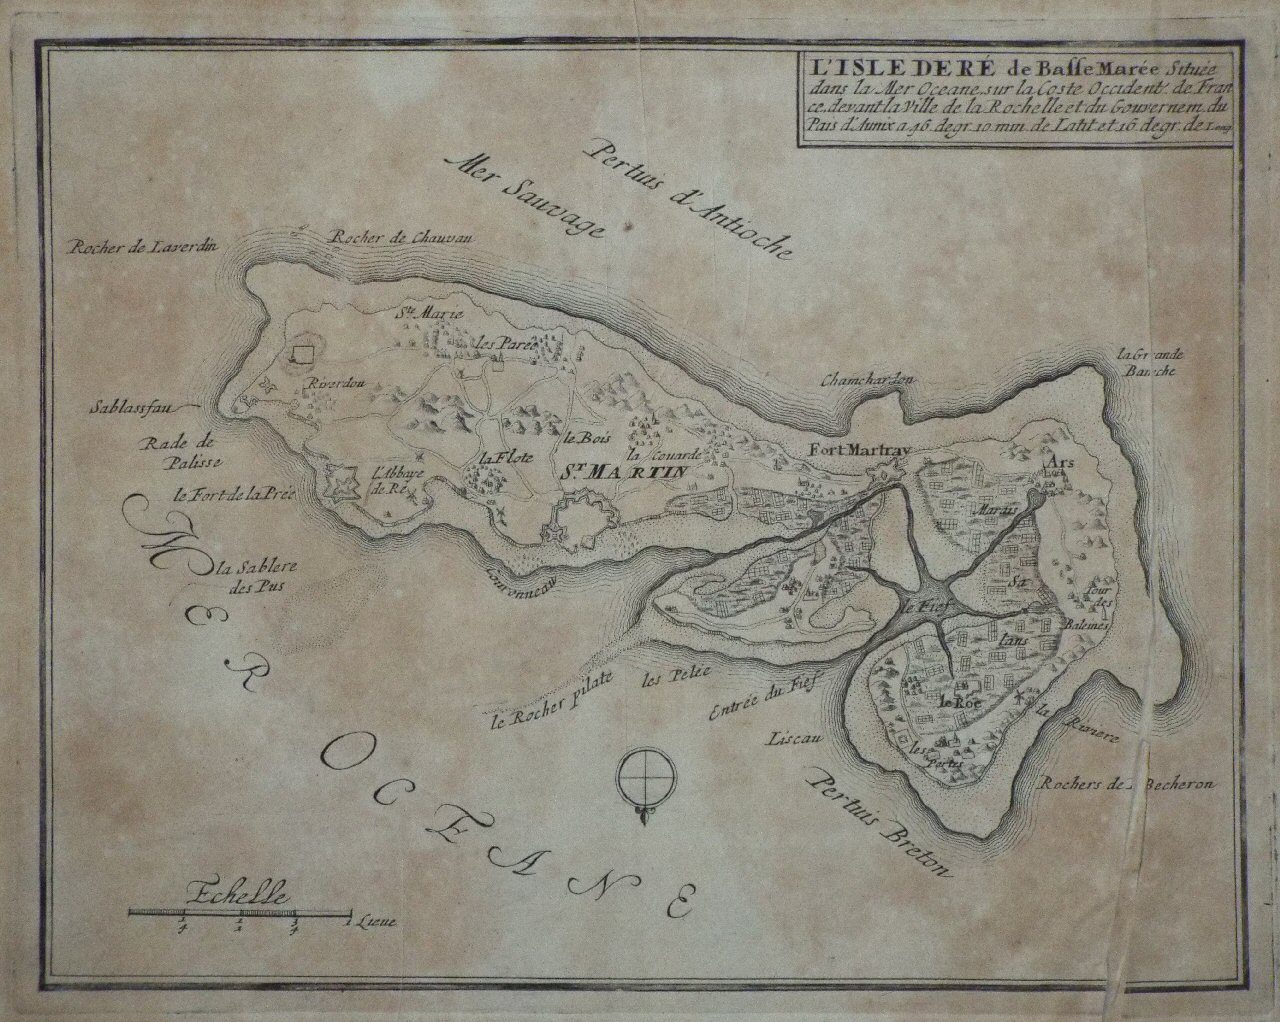 Map of Isle de Re - Isle de Re